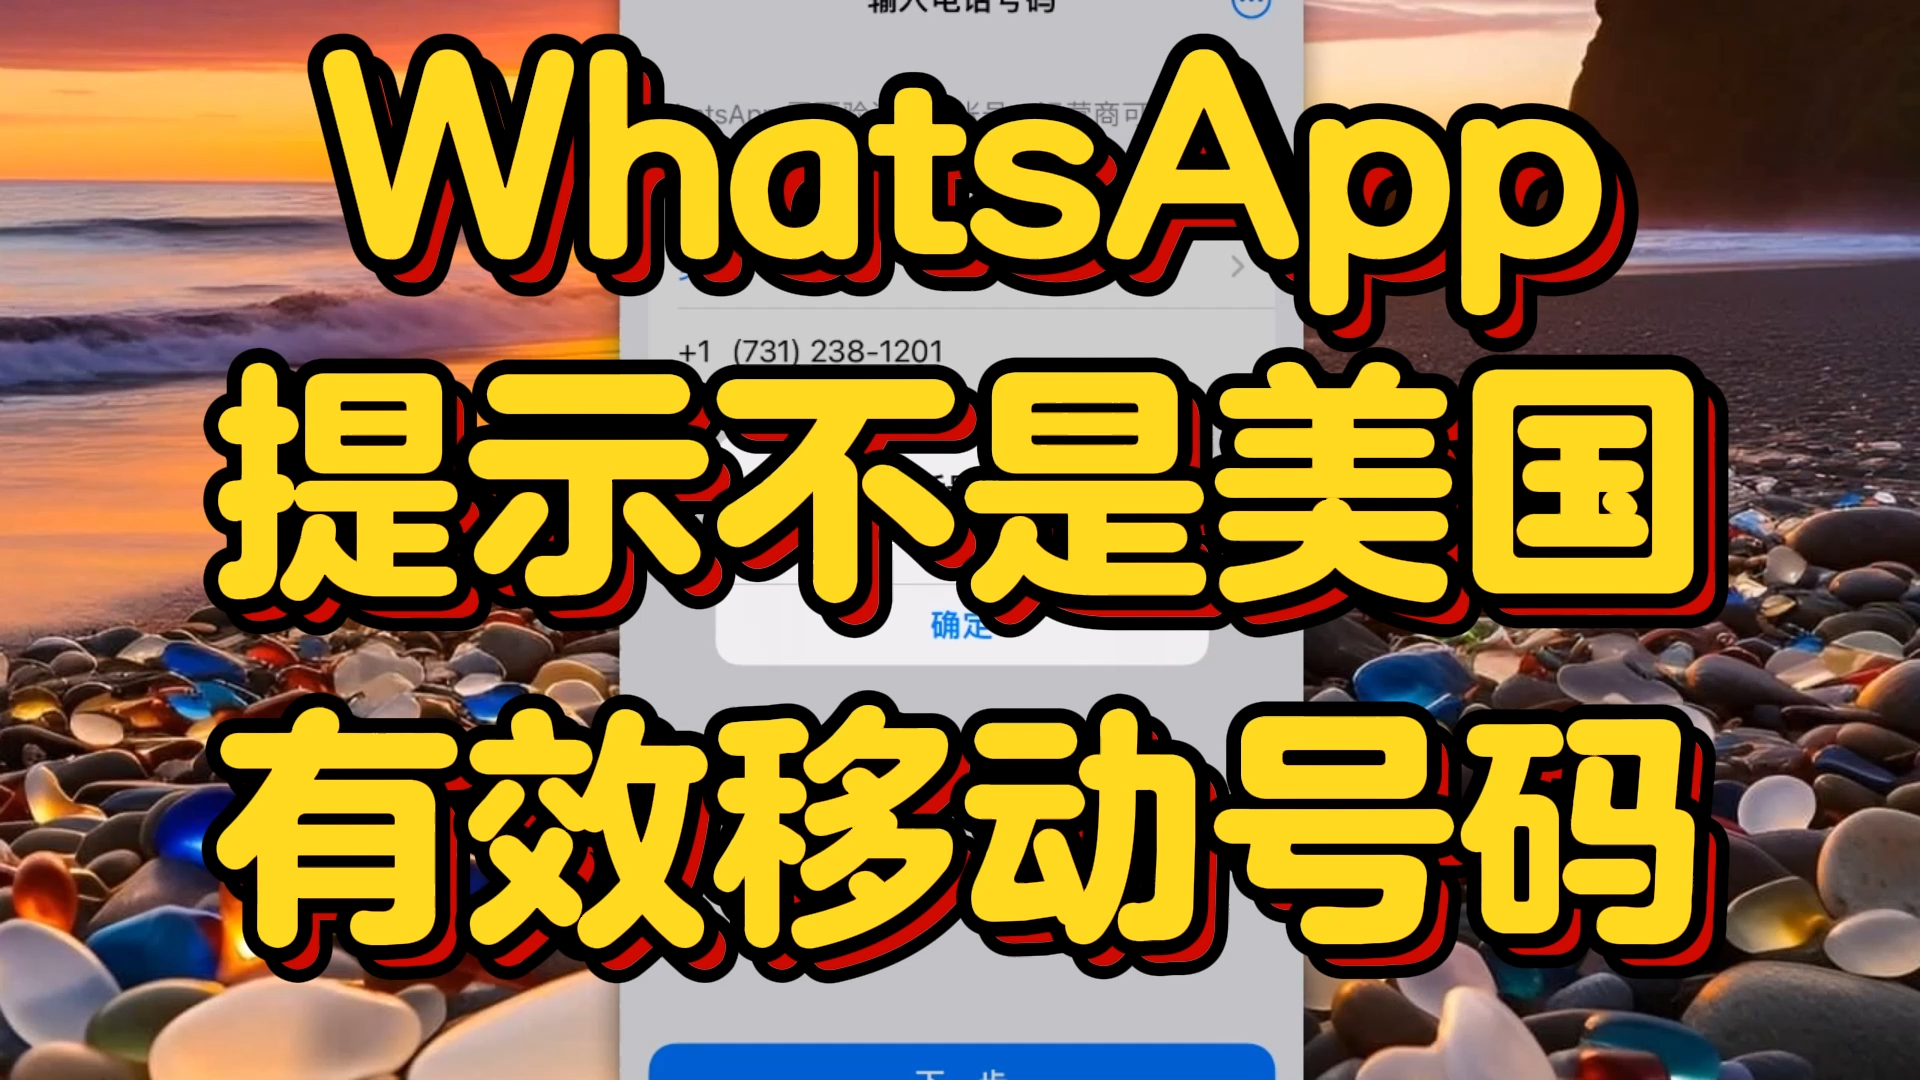 whatsapp中文最新版-WhatsApp 中文版全新体验